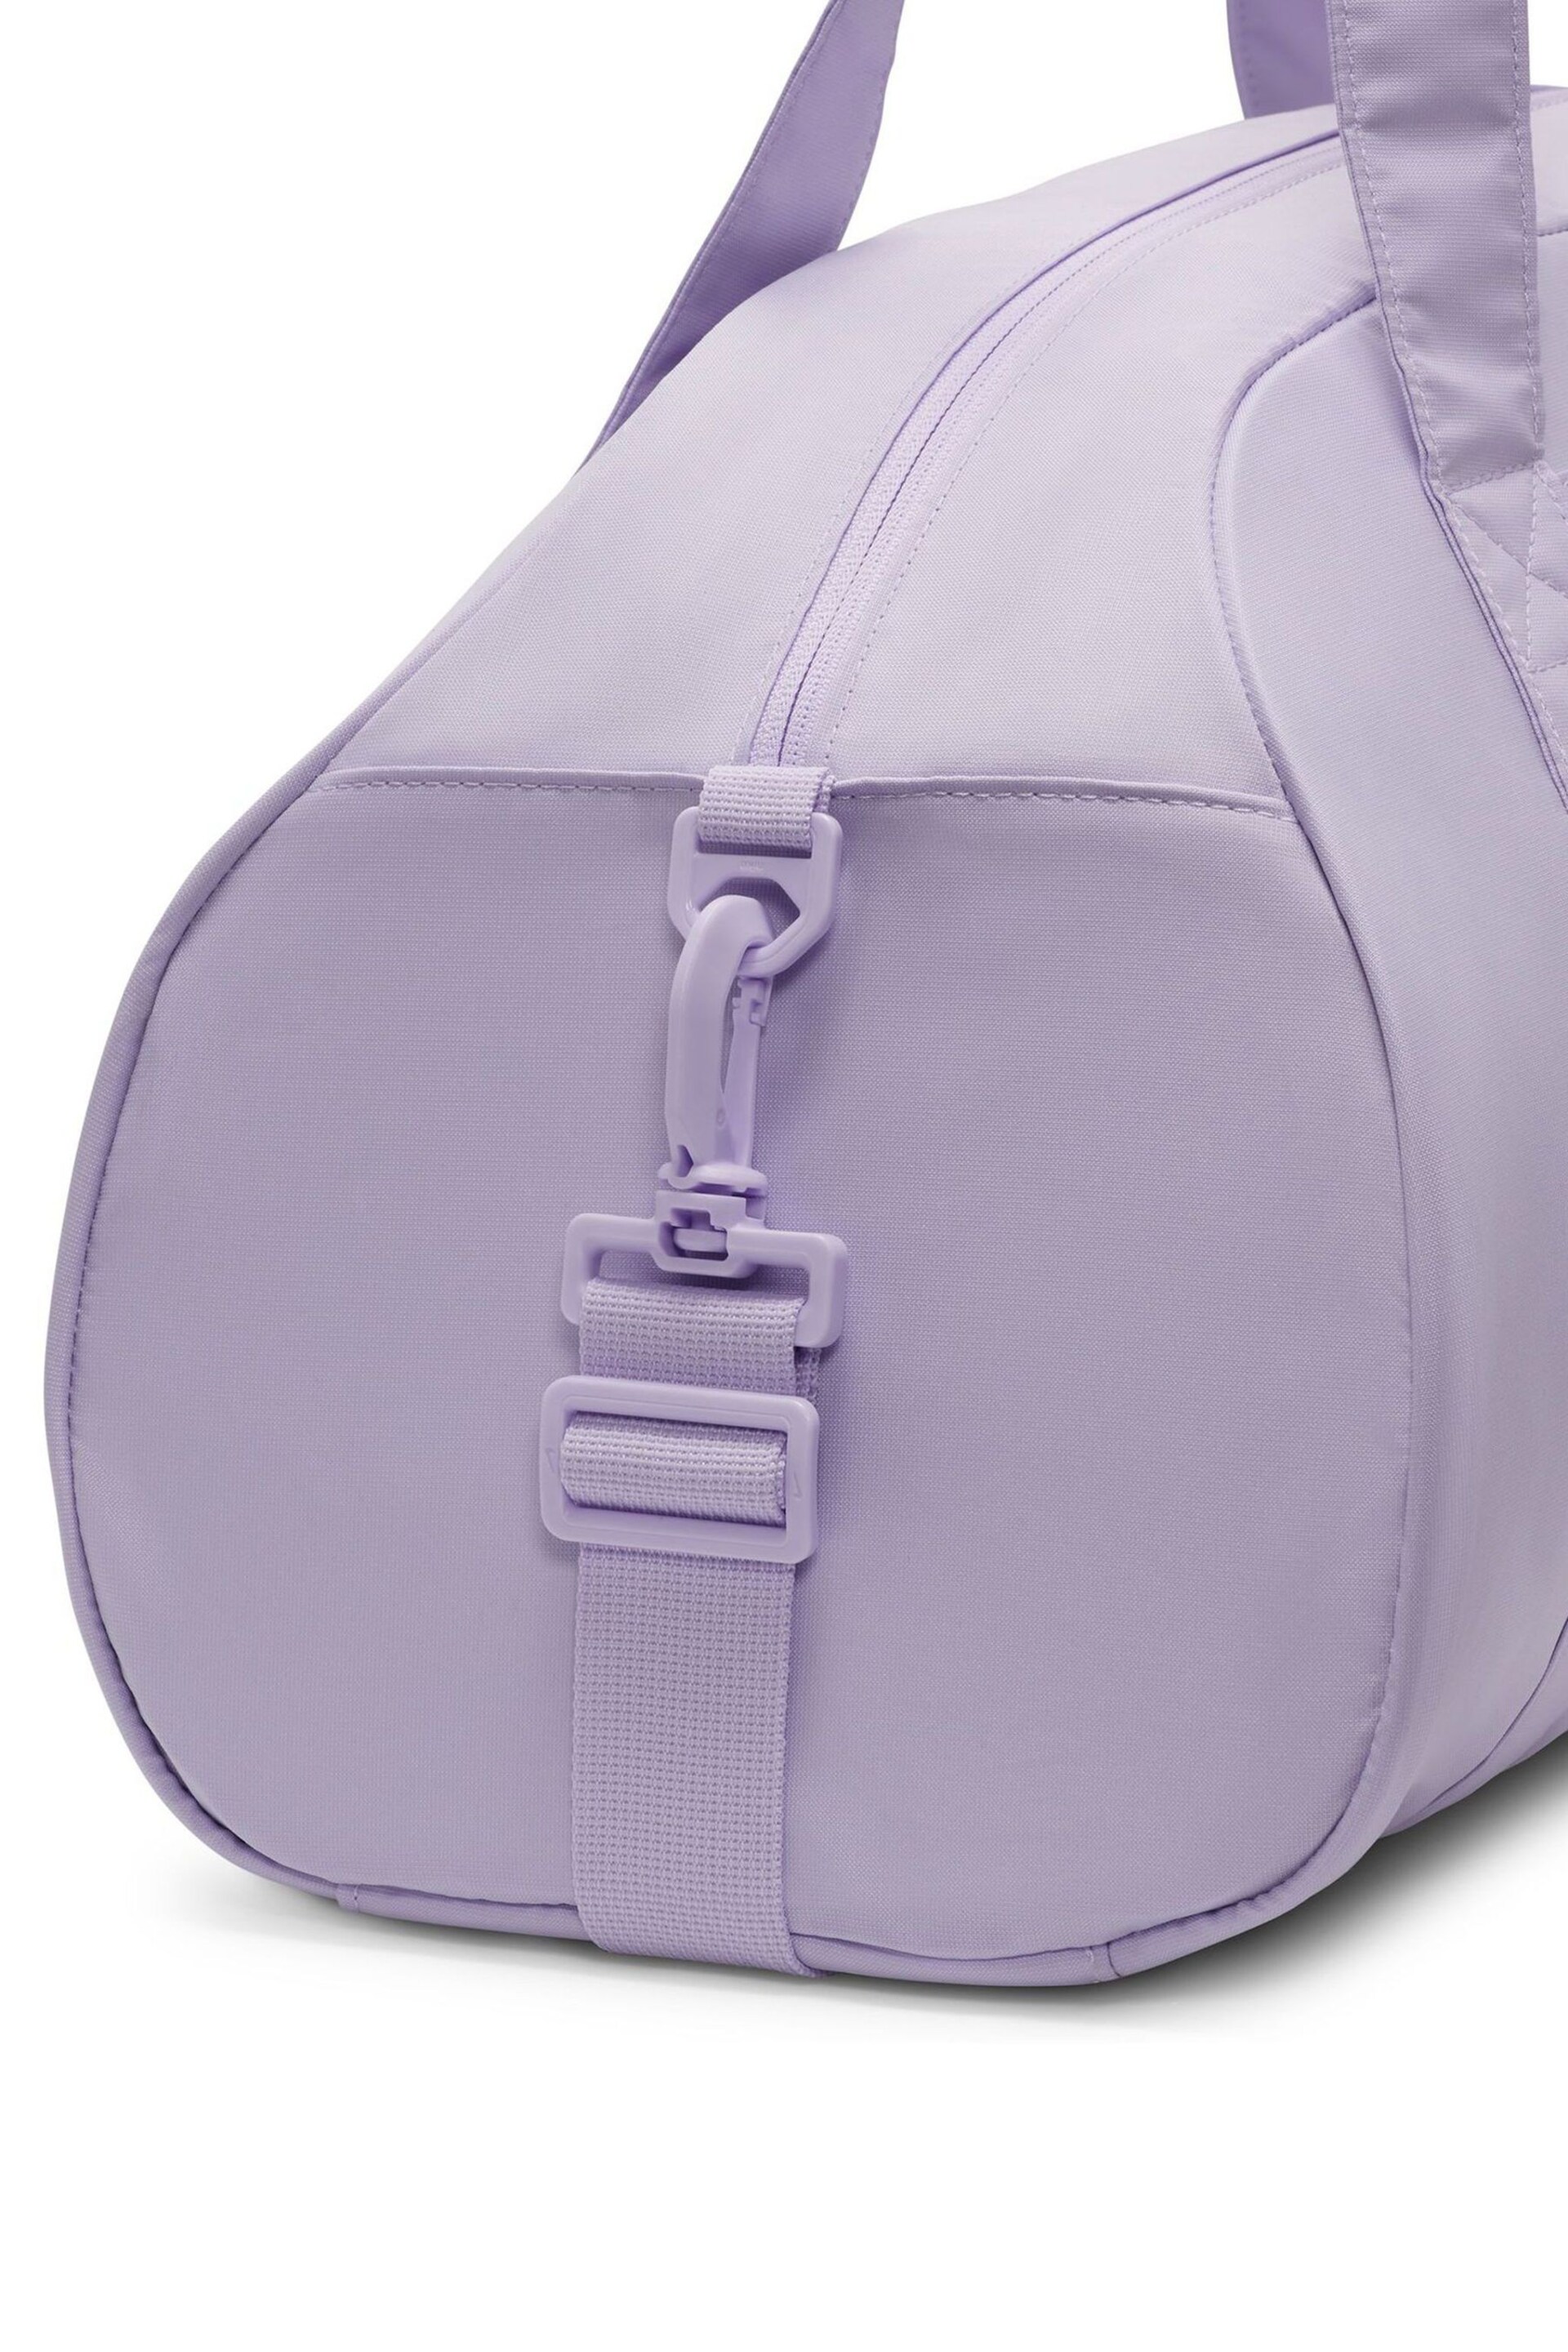 Nike Purple 24L Gym Club Duffel Bag - Image 8 of 11